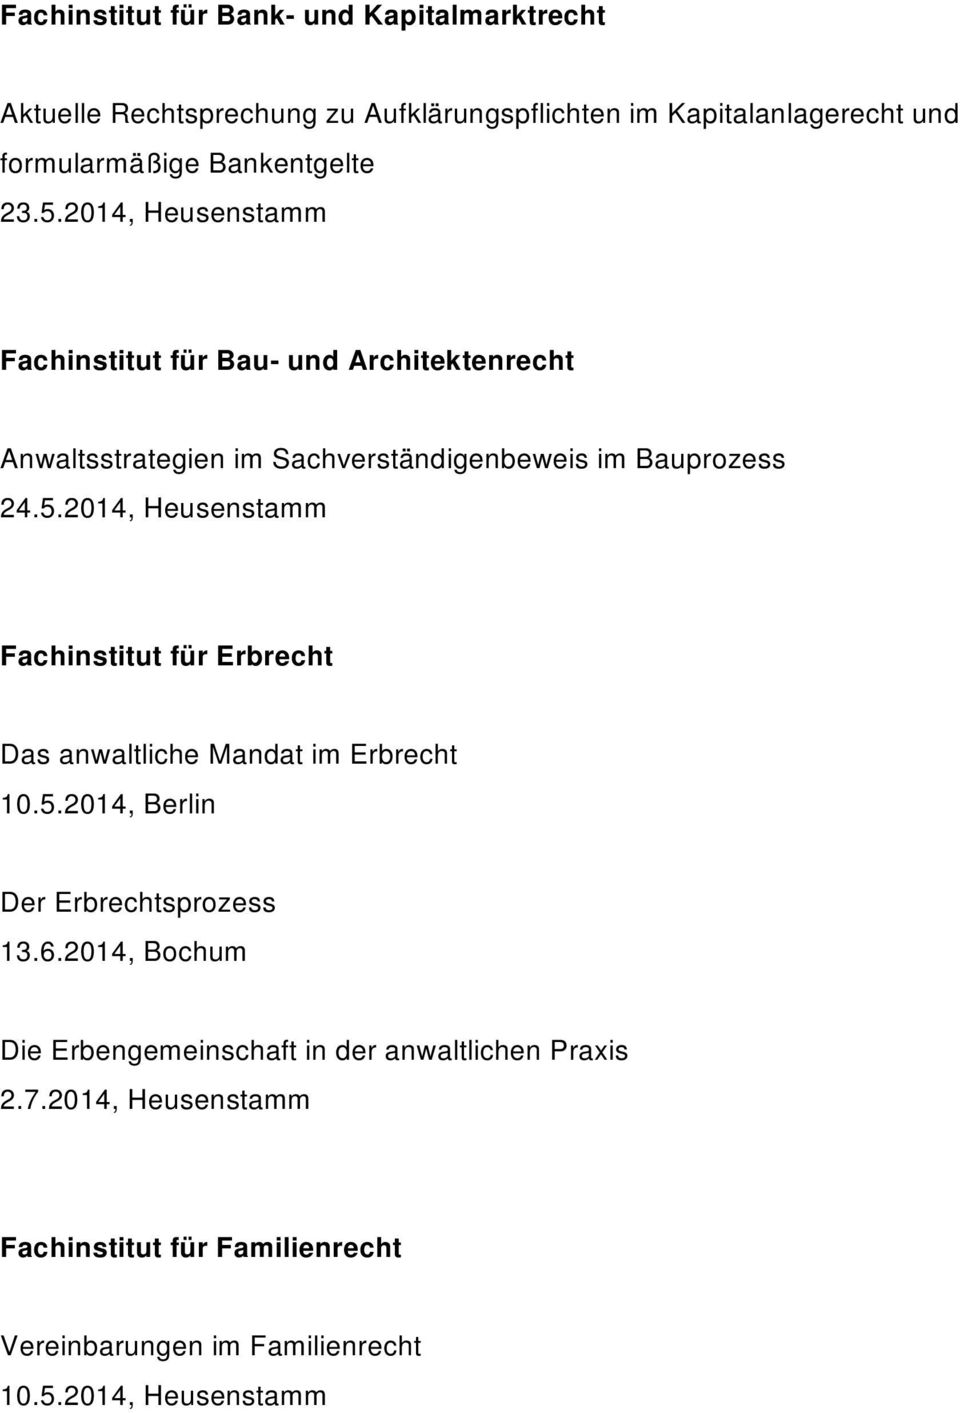 5.2014, Berlin Der Erbrechtsprozess 13.6.2014, Bochum Die Erbengemeinschaft in der anwaltlichen Praxis 2.7.